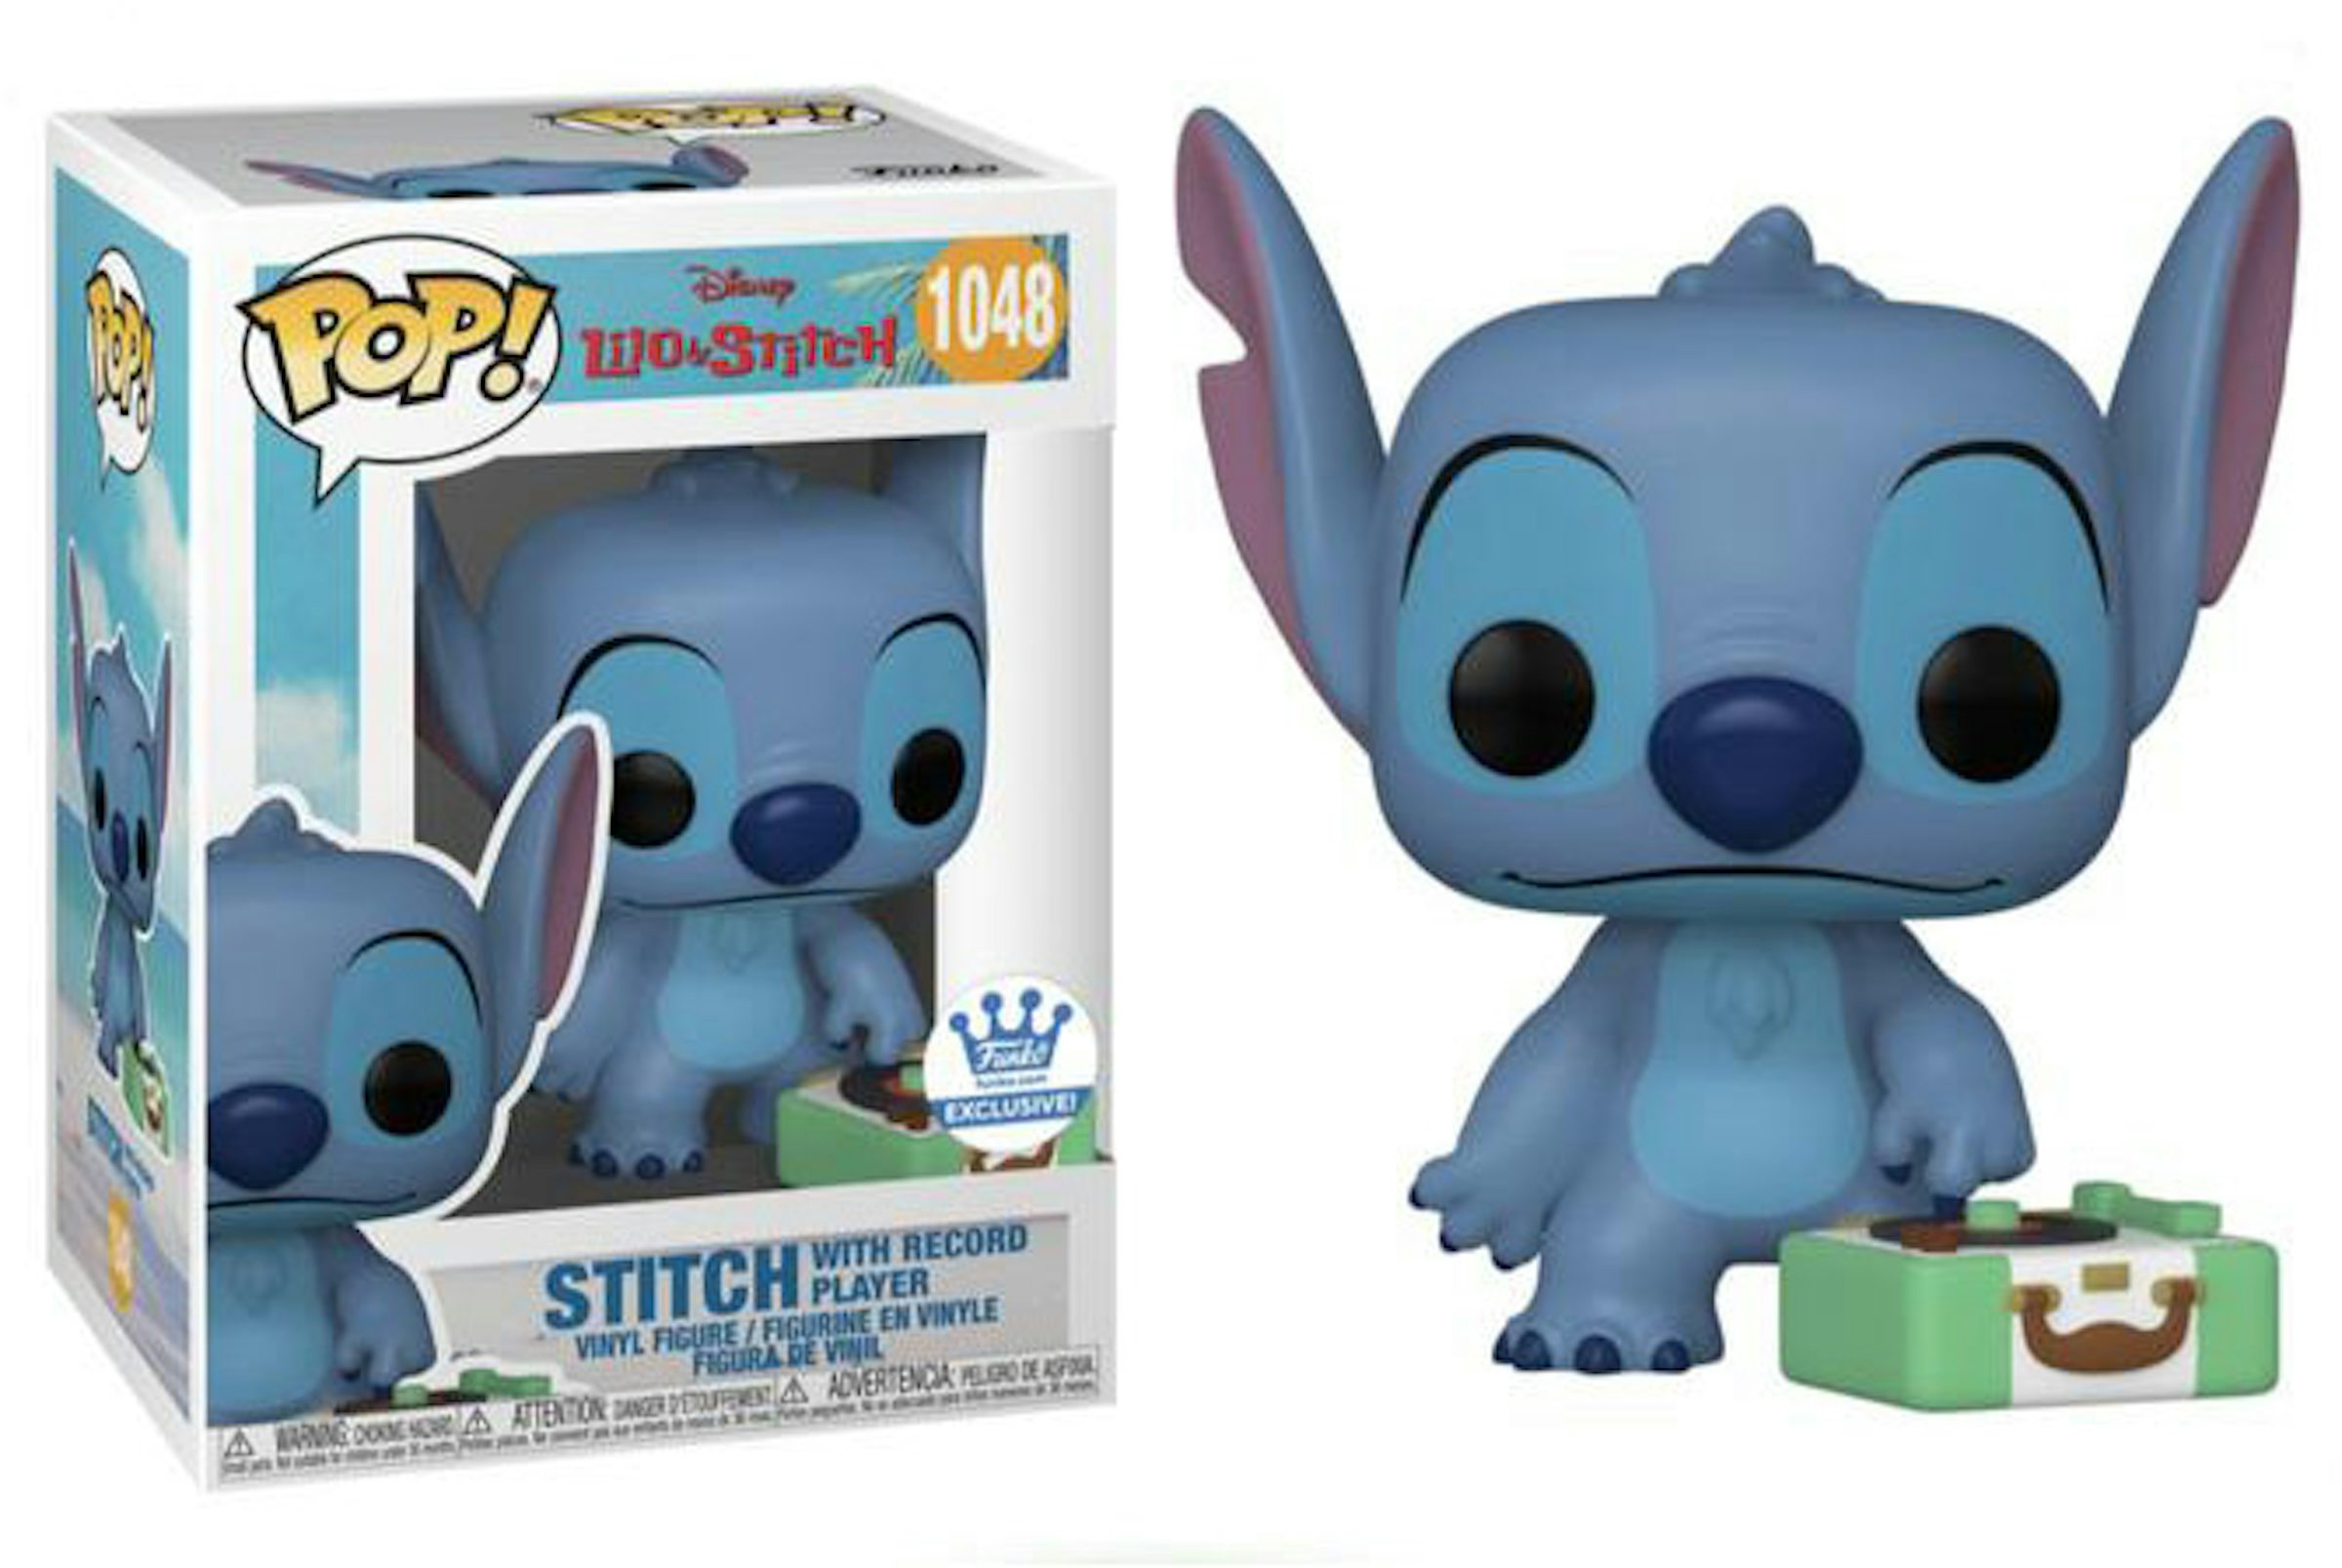 Buy Pop! Stitch in Cuffs at Funko.